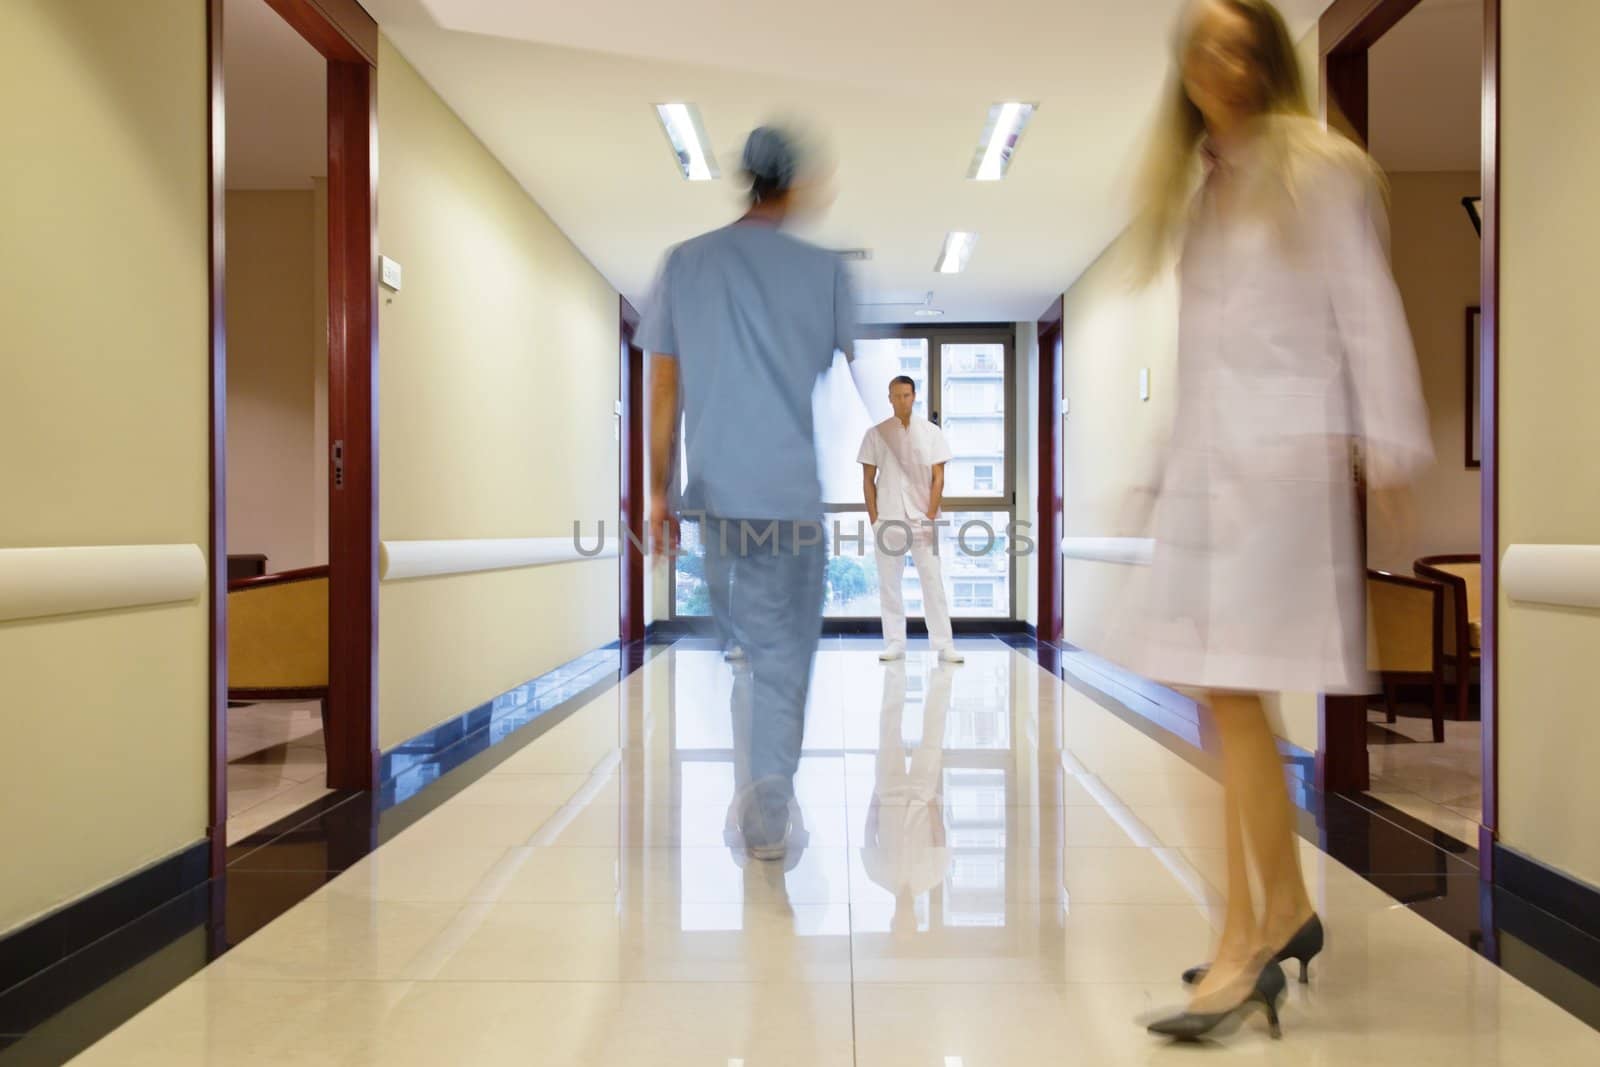 Staff walking through the hallway in hospital